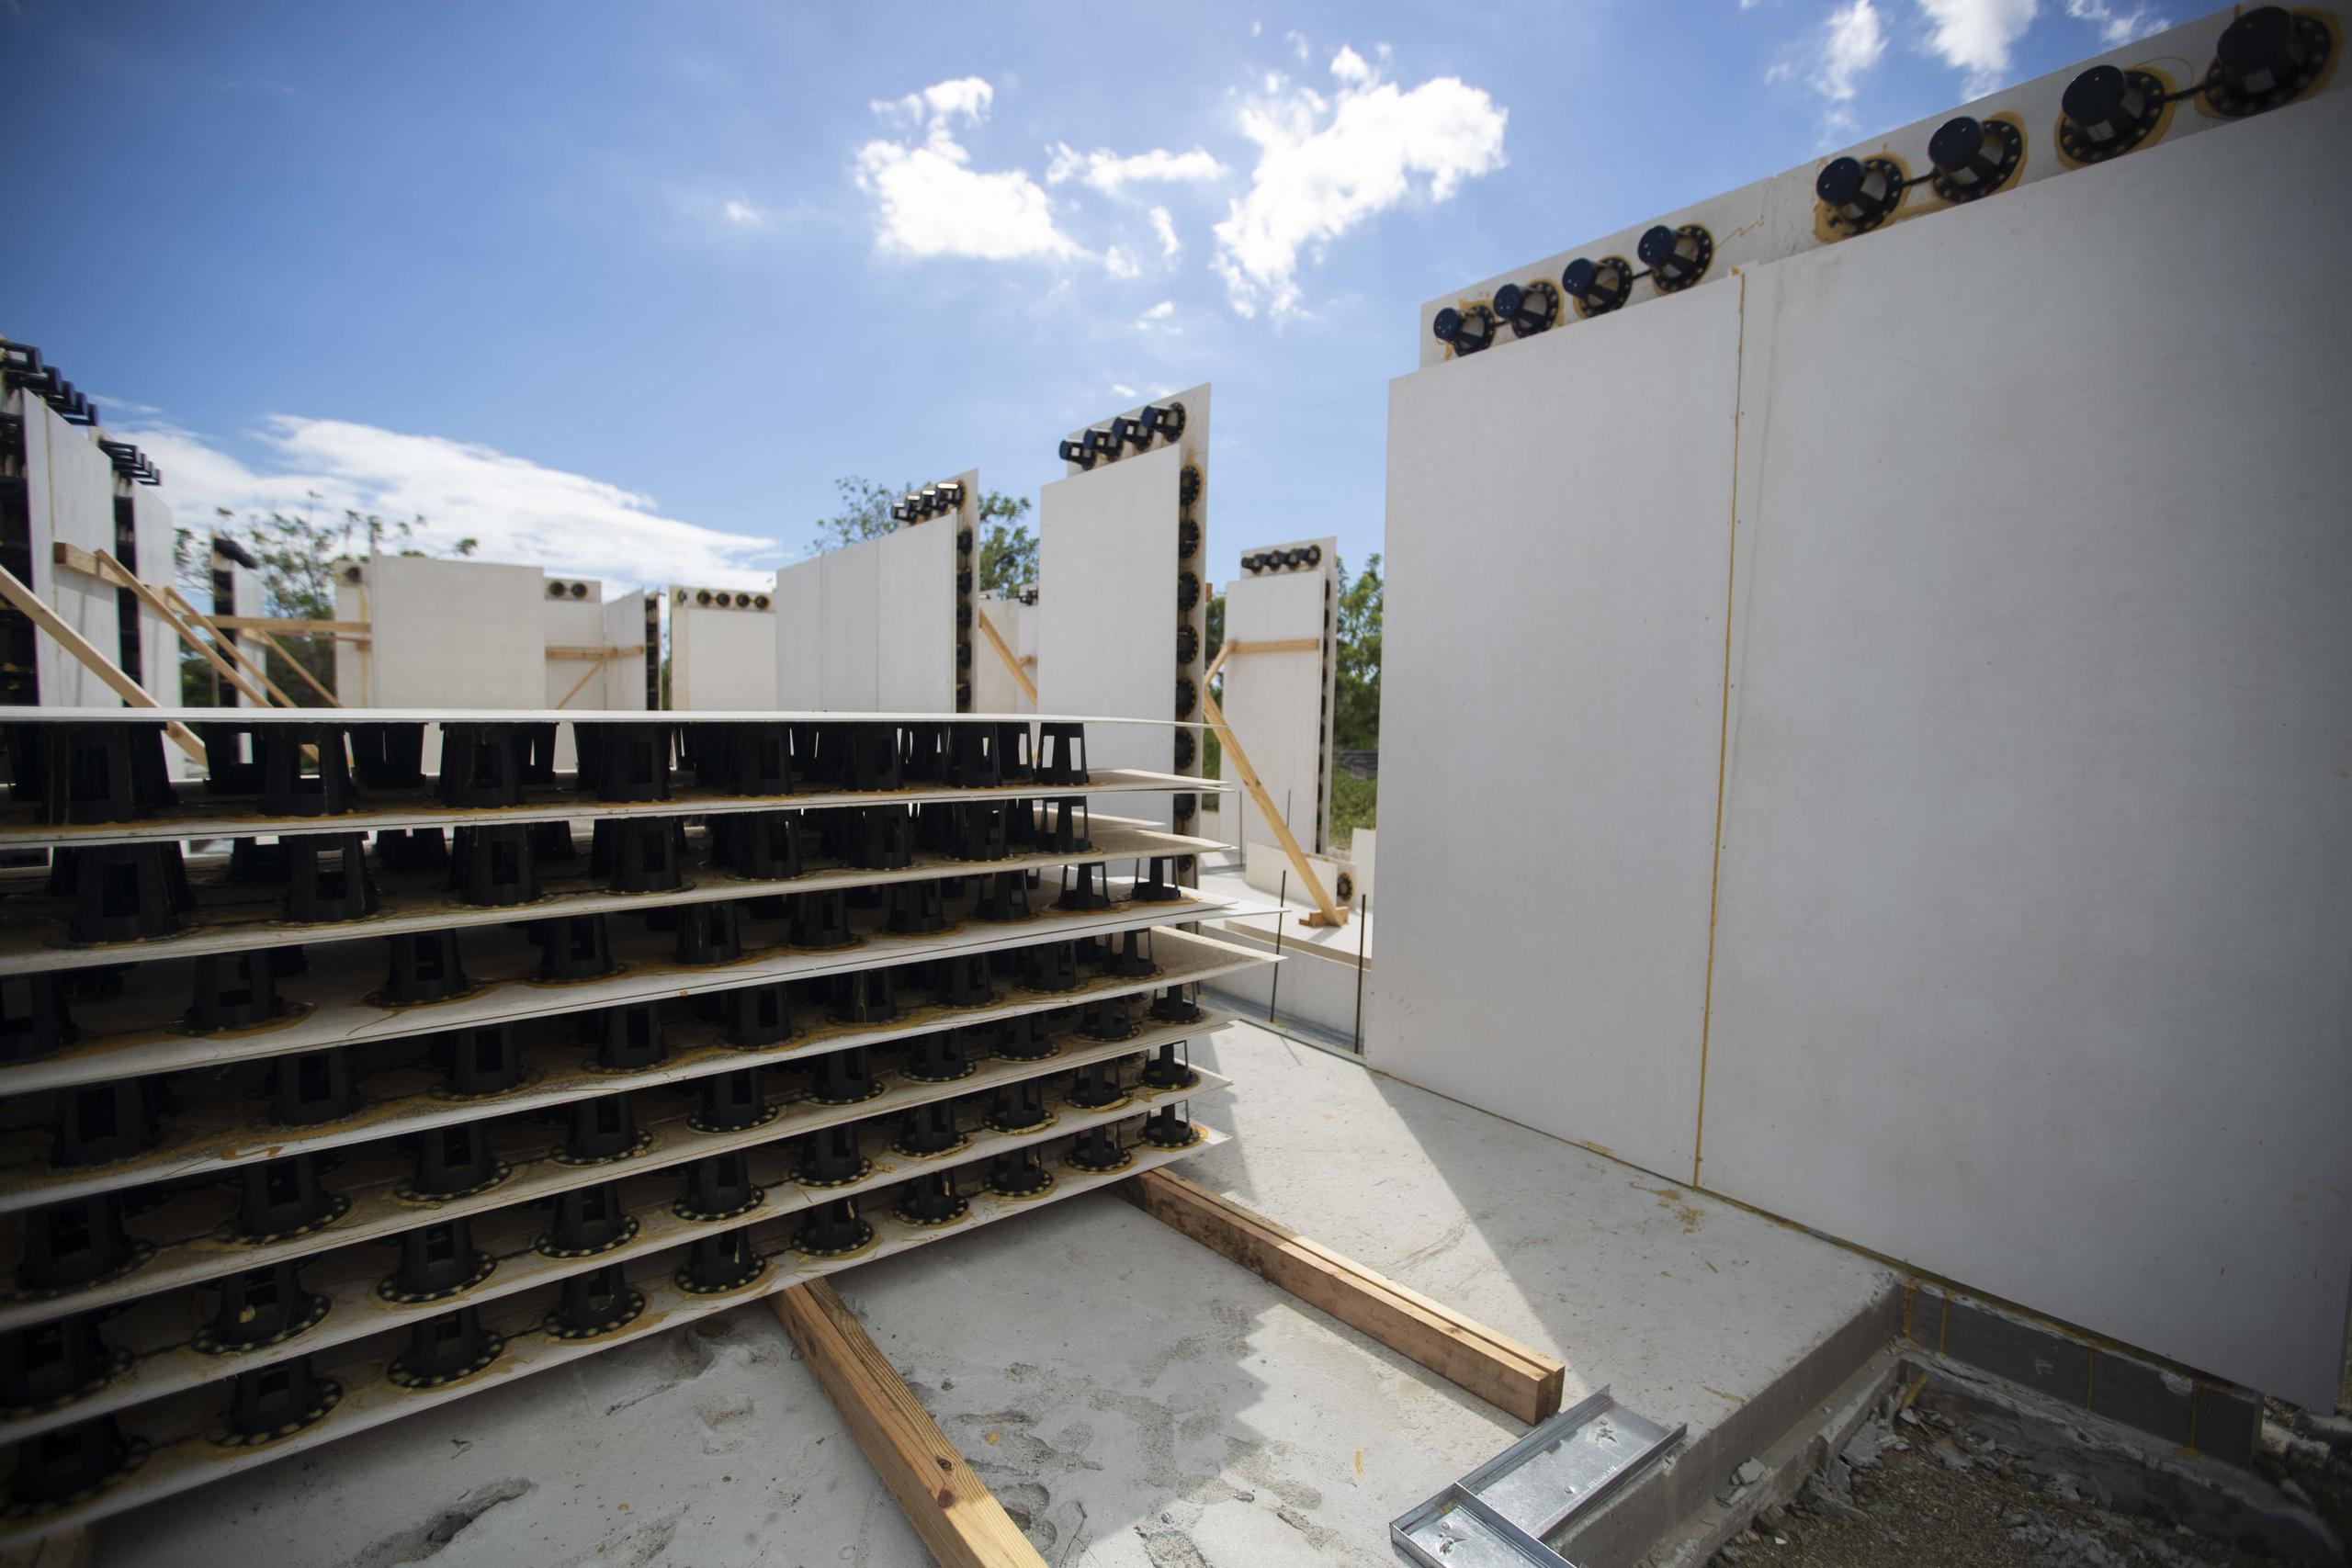 "El sector de la construcción es vital para este nuevo Puerto Rico. Este sector registró una baja en enero de 900 puestos, según datos del Encuesta de Empleo Asalariado No Agrícola del Departamento del Trabajo y Recursos Humanos federal", dijo el representante.